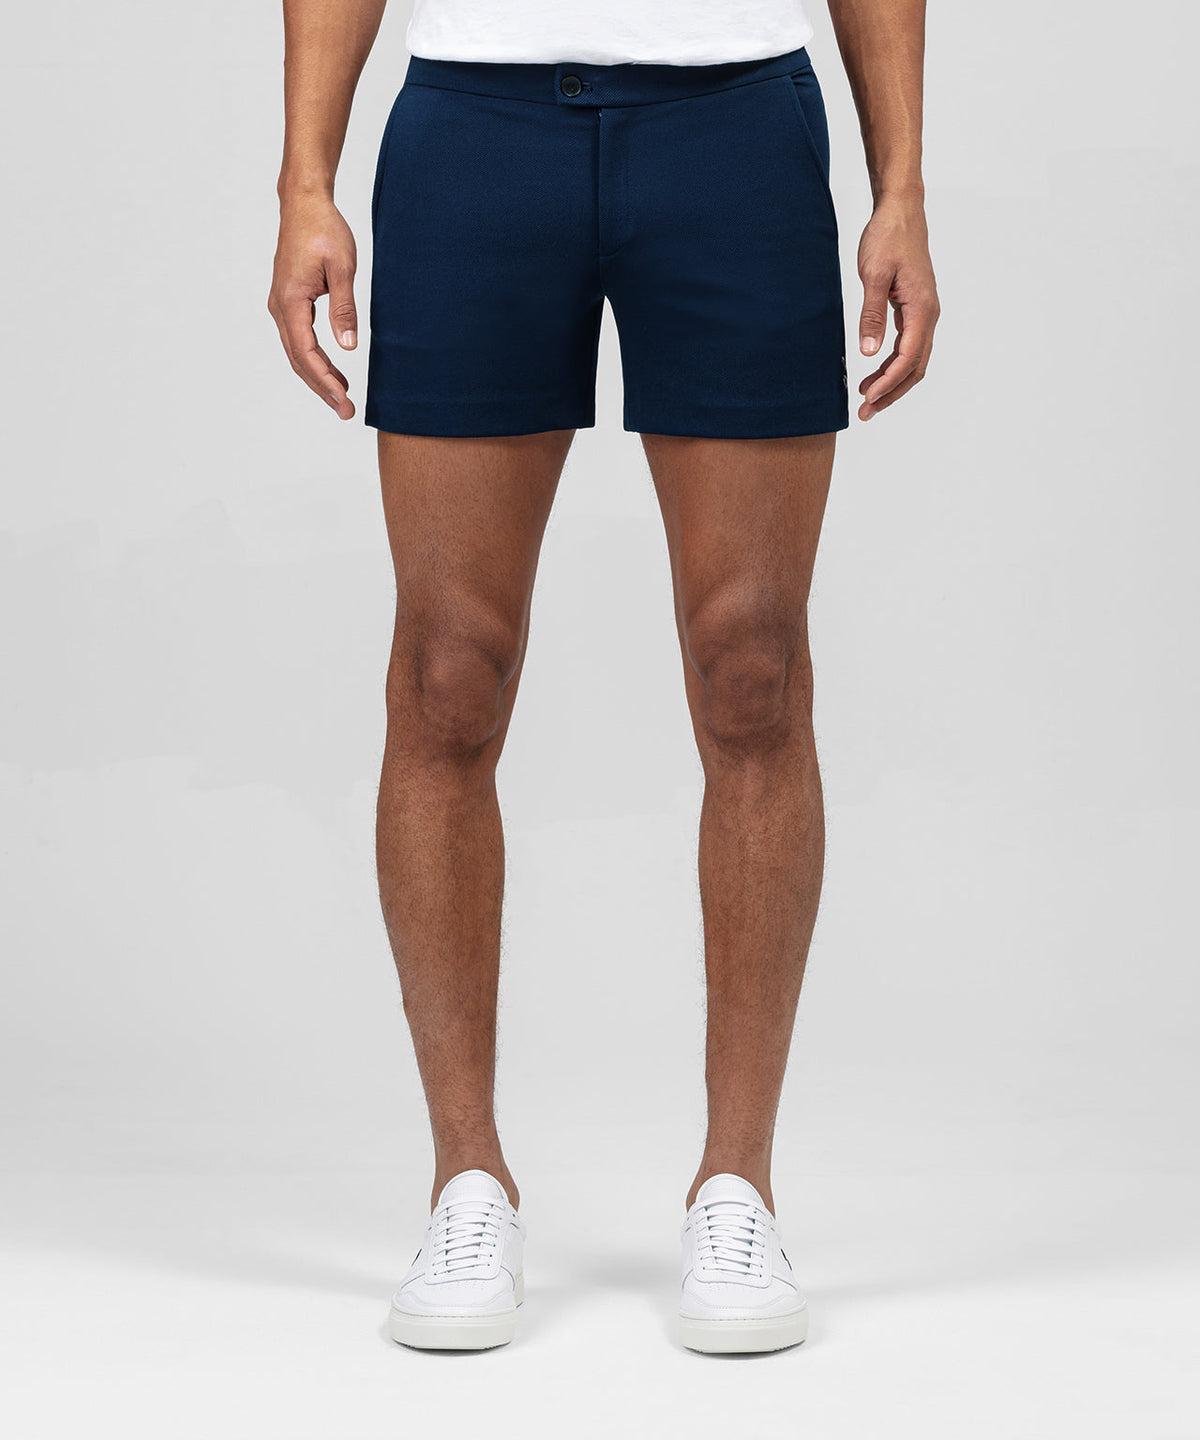 RD Tennis Shorts: Navy